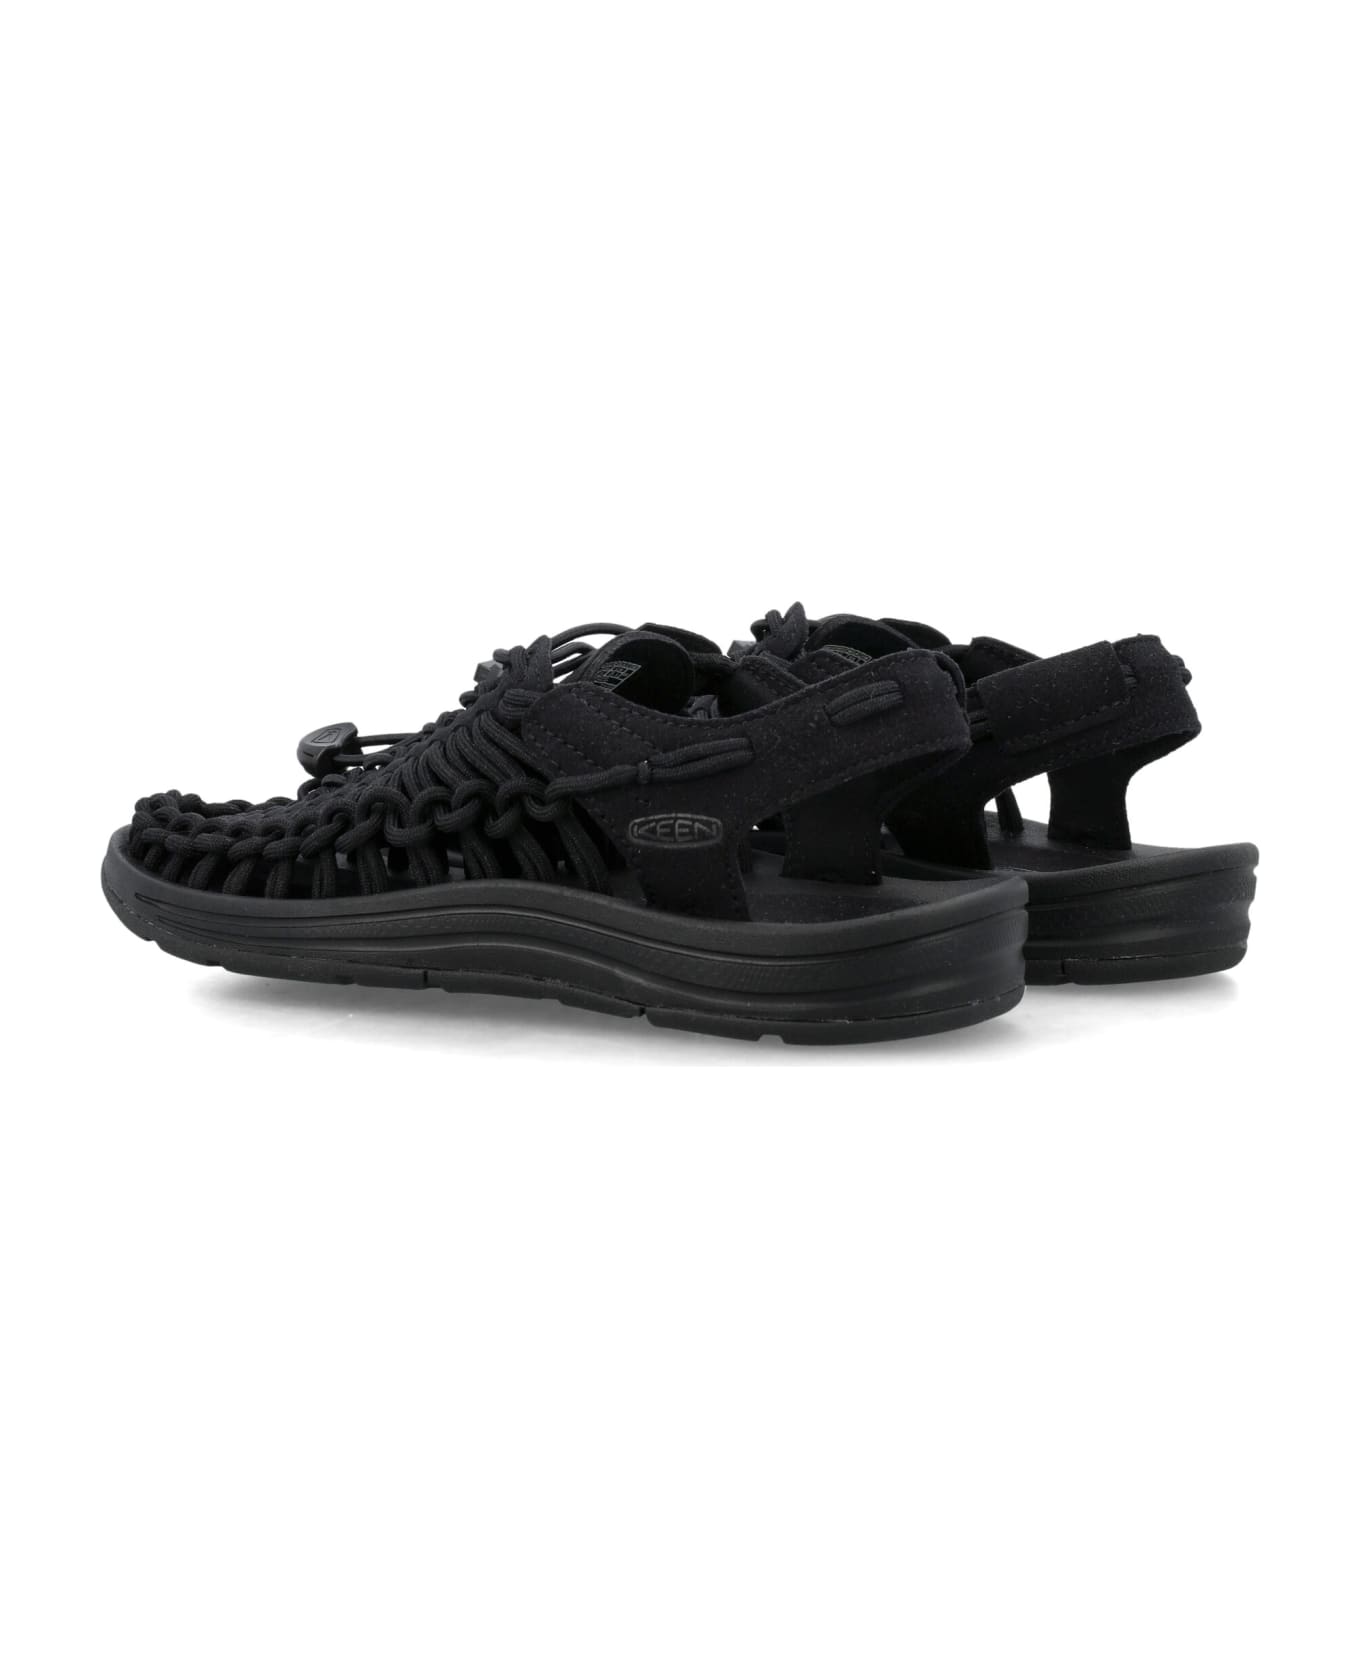 Keen Uneek Sandals - BLACK